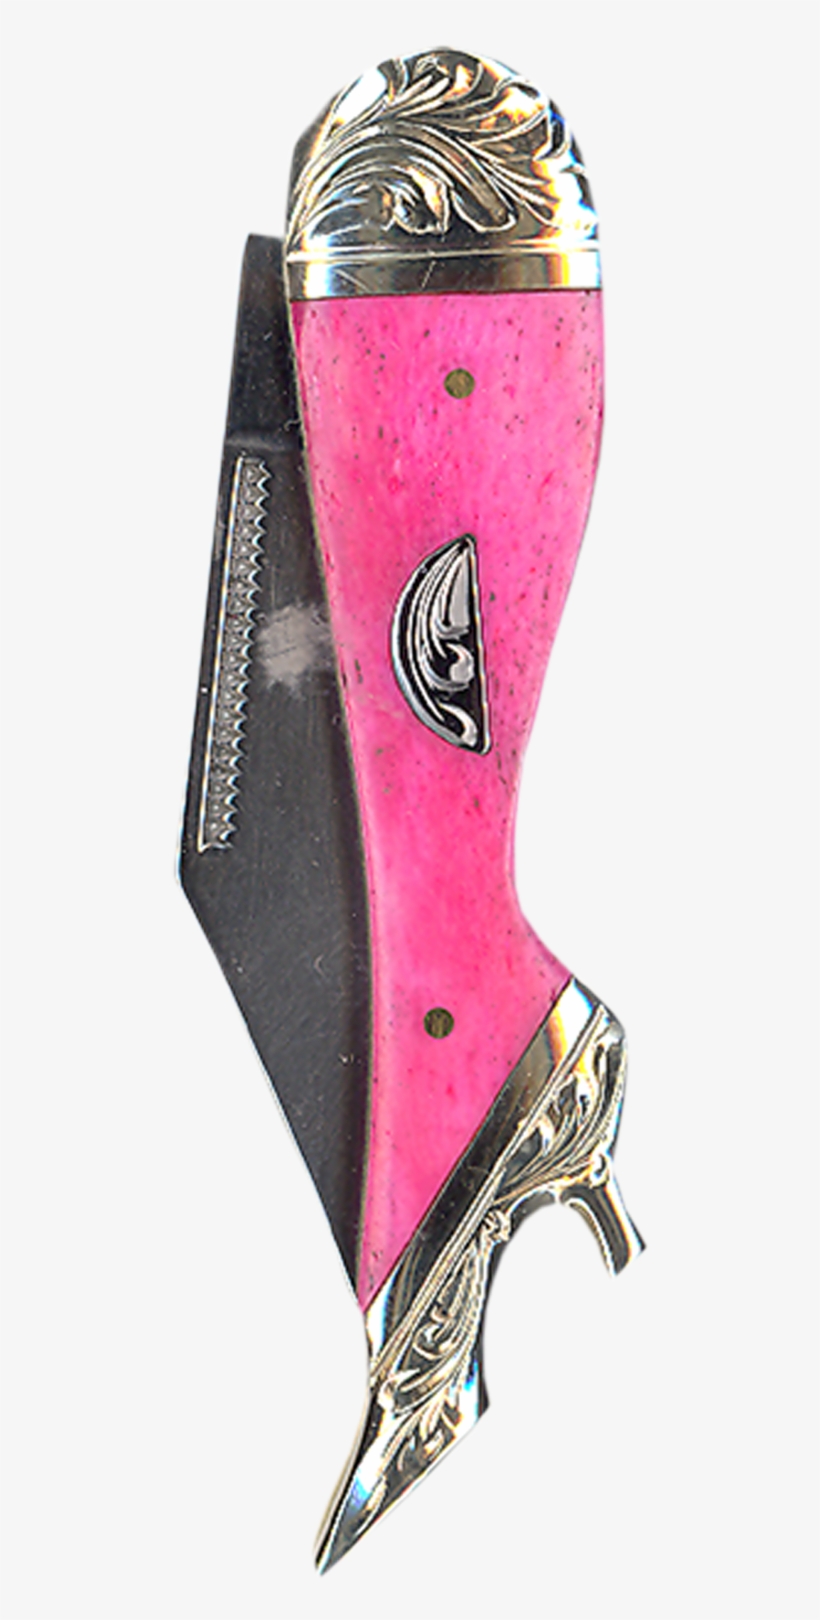 Ladies Leg Pocket Knife - Vogt Silversmiths Men's Resin Hot Pink Western Knife, transparent png #1085105